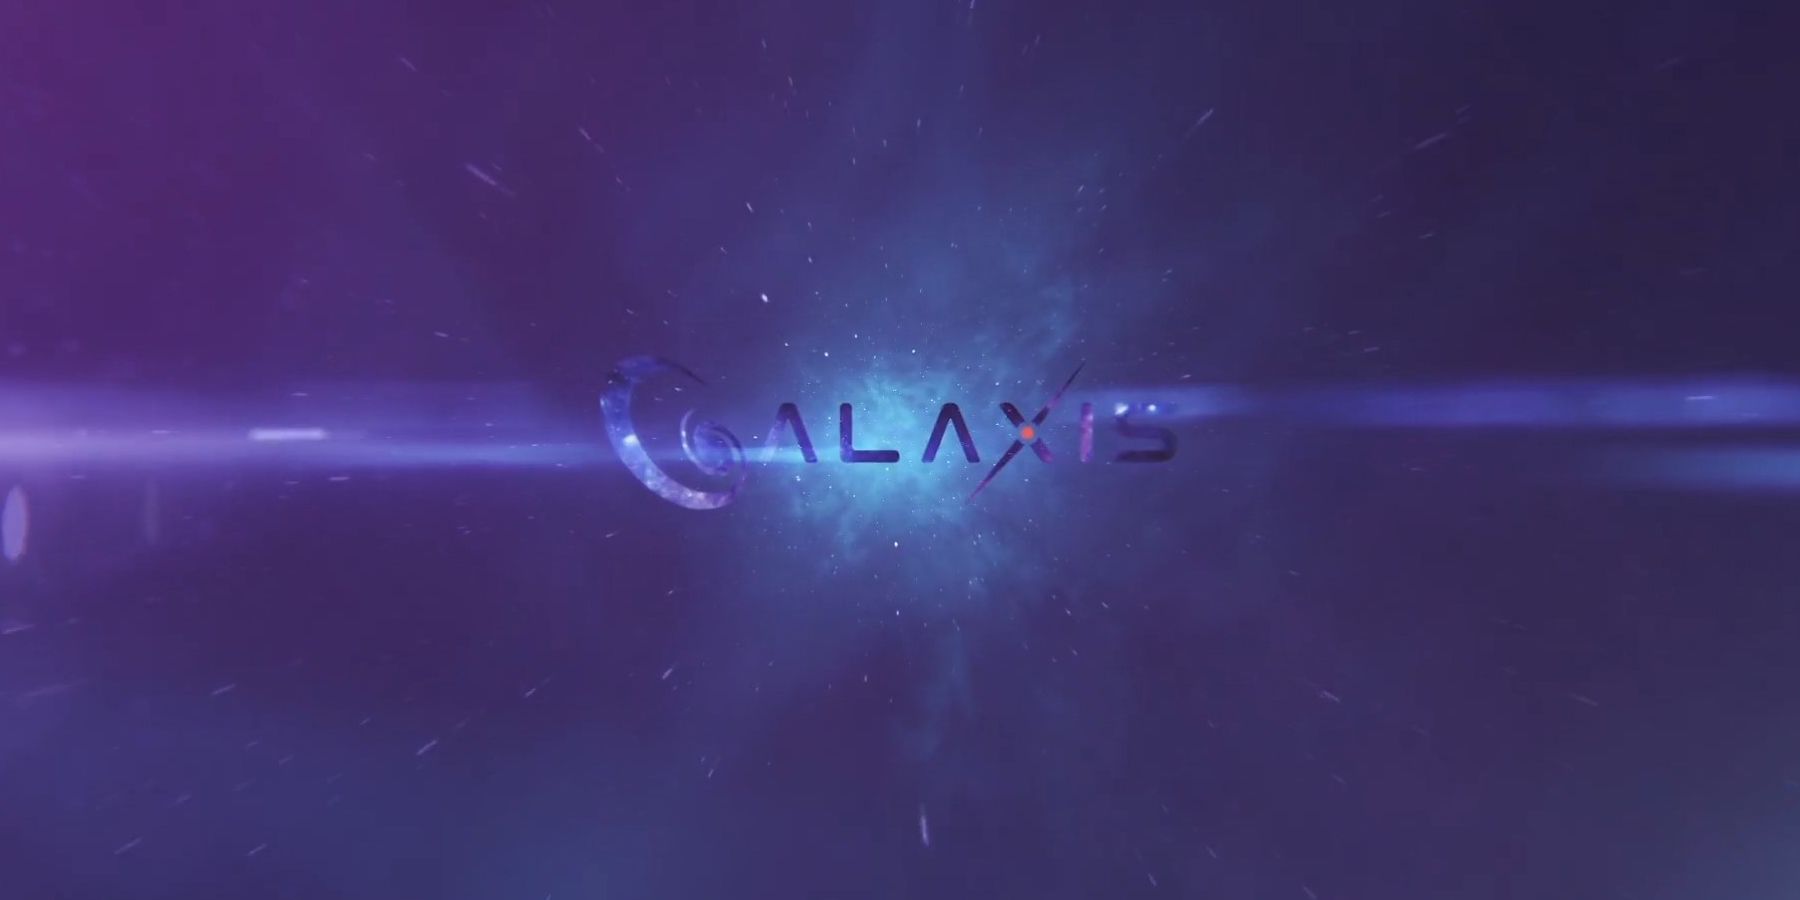 مقابلة Galaxis: الرئيس التنفيذي لشركة Max Gallardo تفاصيل أنظمة نقاط منصة البث ، والاعتدال المجتمعي ، والمزيد